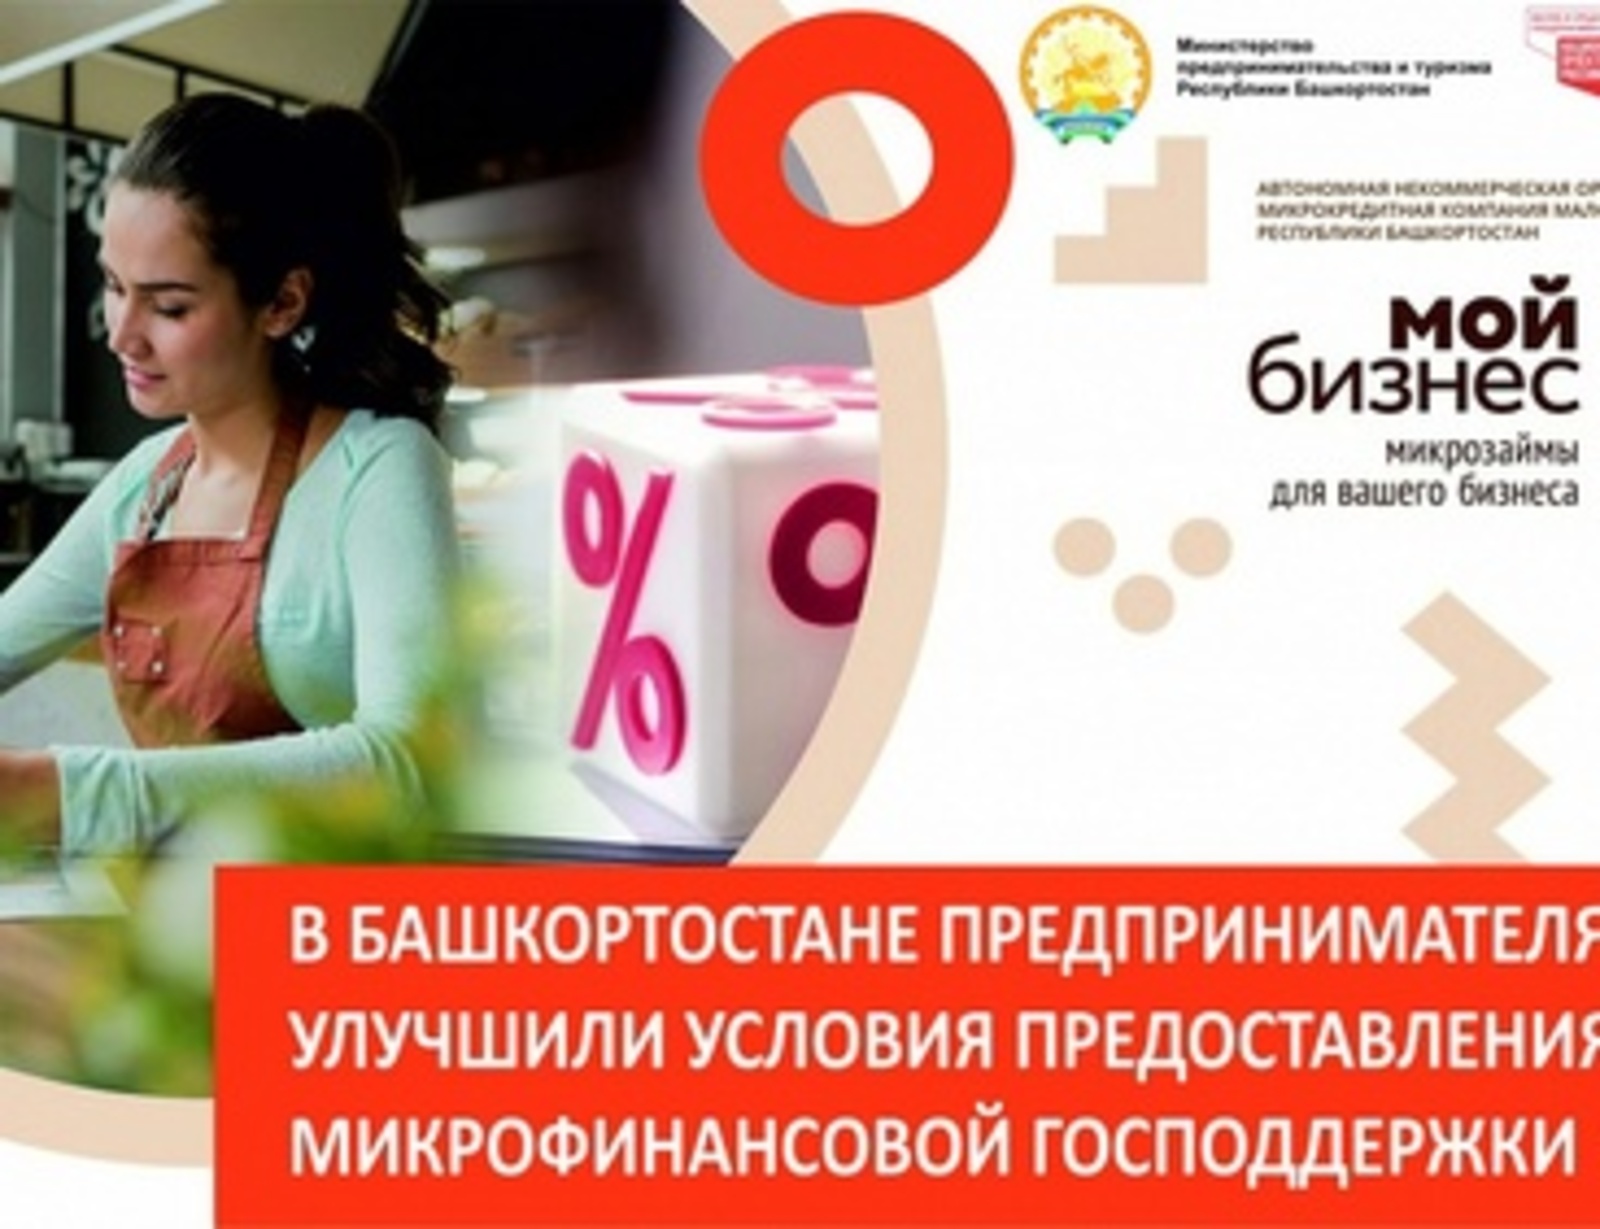 Для предпринимателей Башкортостана снизили ставки по микрофинансовой господдержке к докризисному уровню и внедрили прием онлайн-заявок в формате 24×7